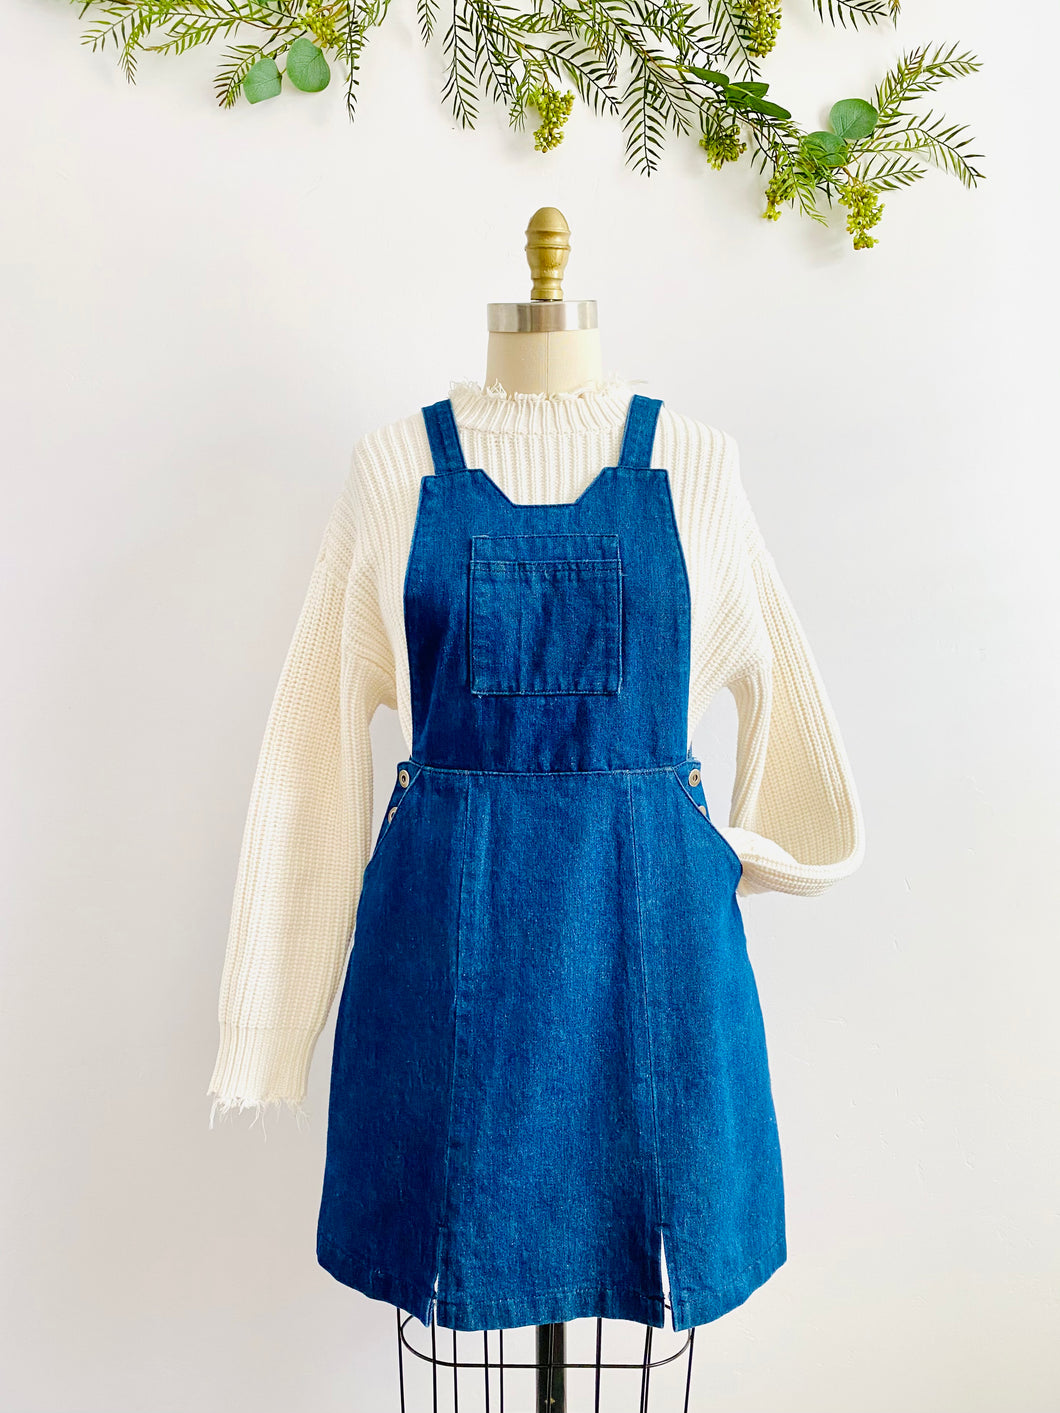 Vintage Blue Denim Dress with Adjustable Straps